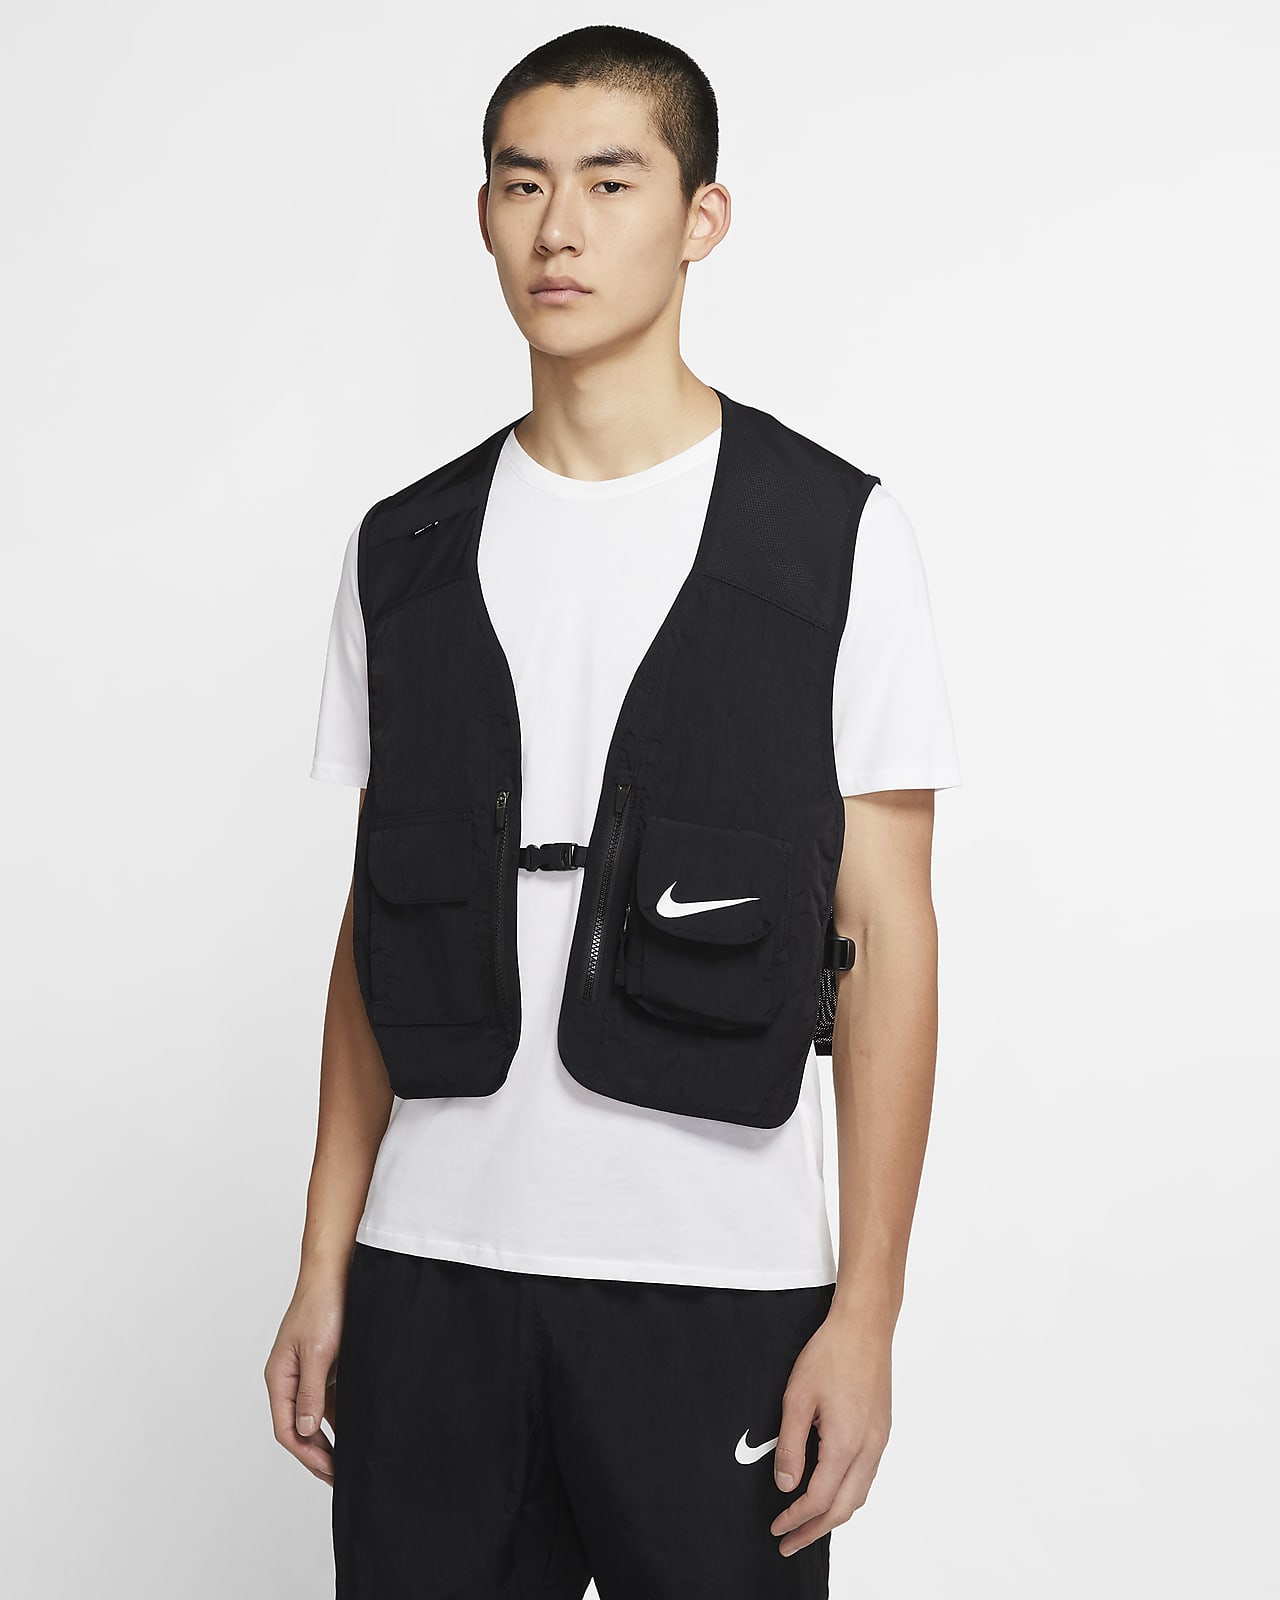 nike black and white vest